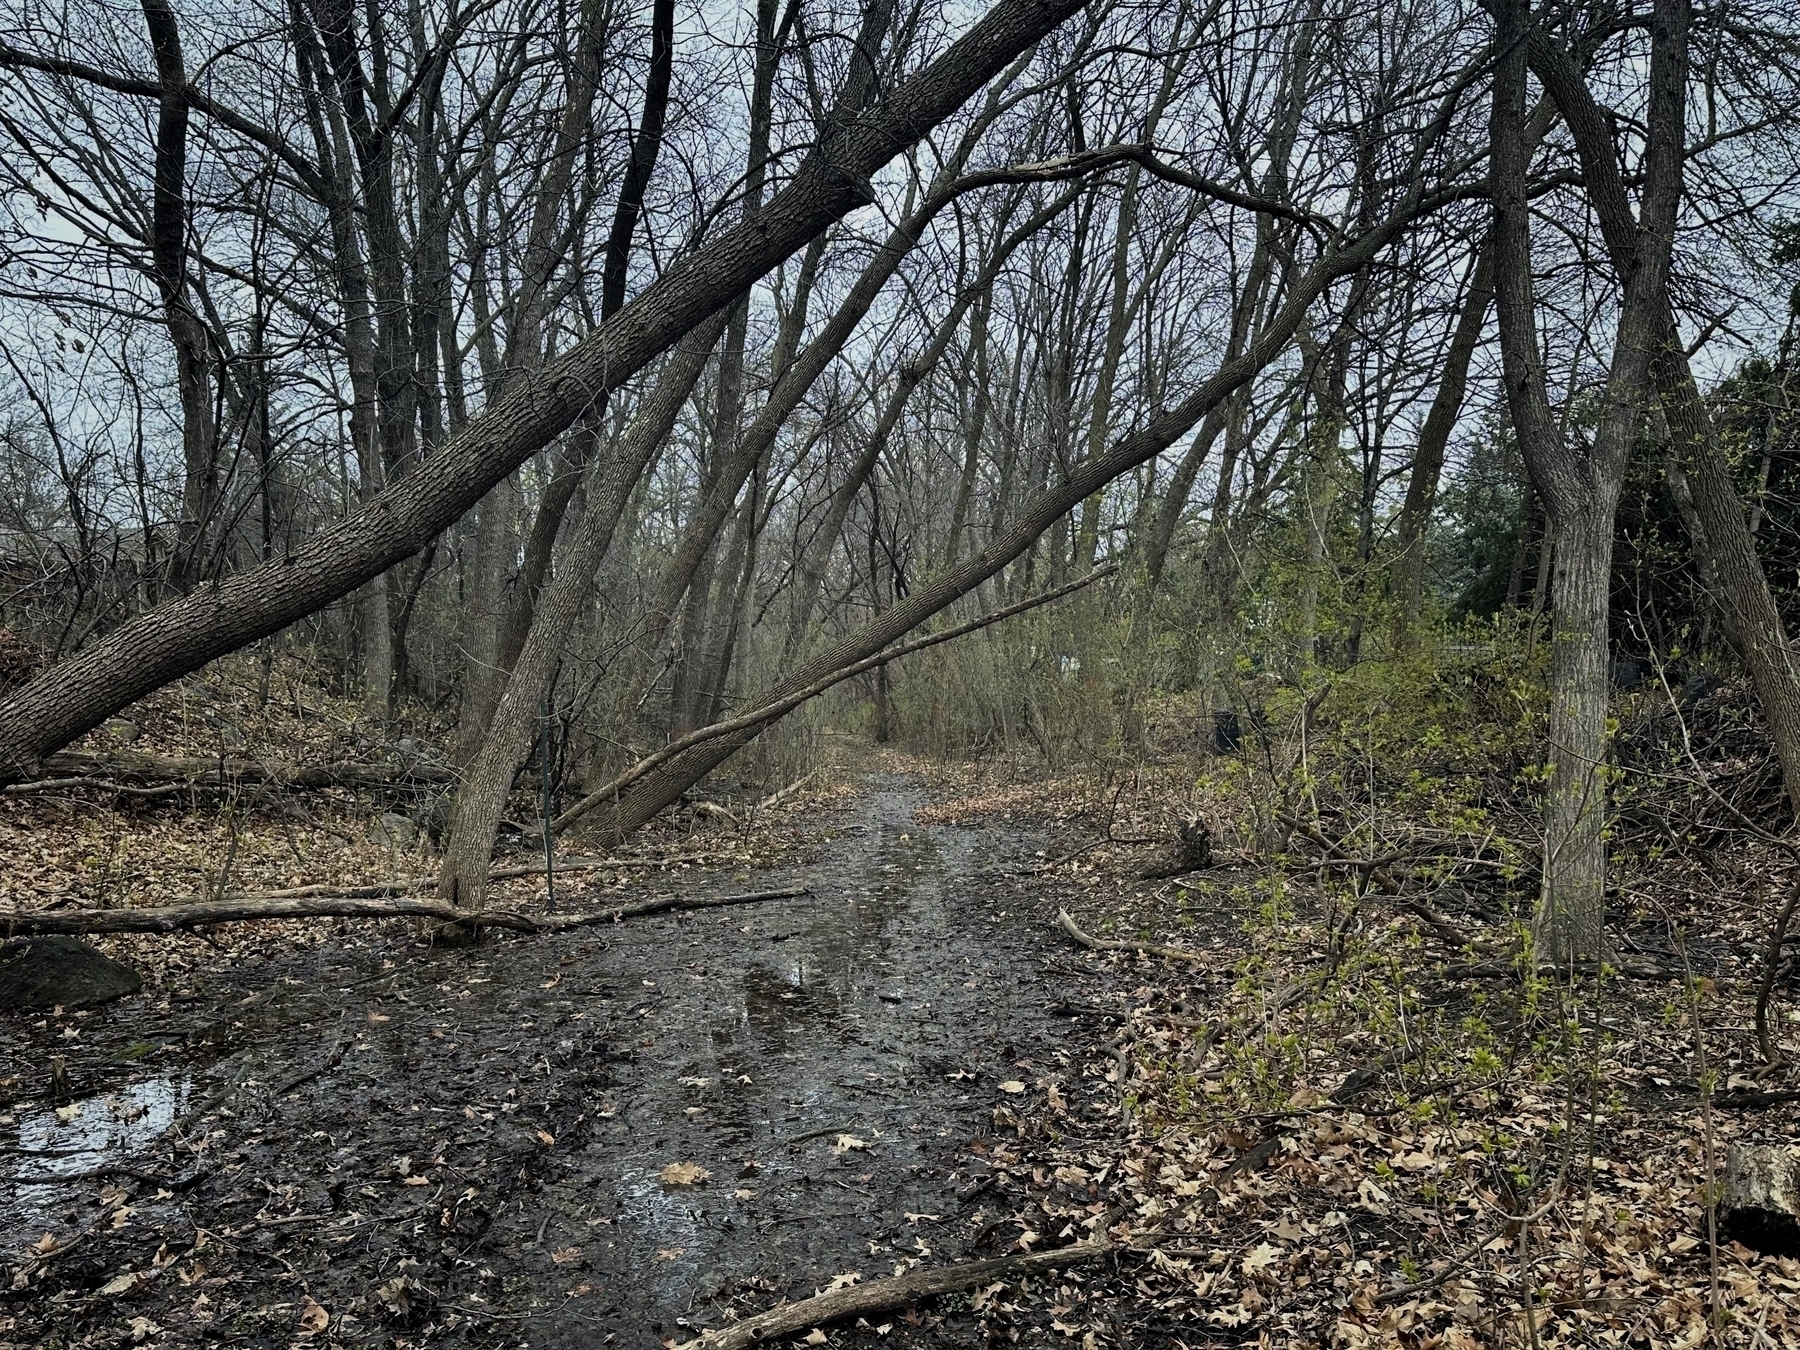 光秃秃的树木倾斜在树叶遍布的树木繁茂的地区的泥泞小路上，暗示着自然的环境，可能是秋天或冬天，没有明显的人类存在。